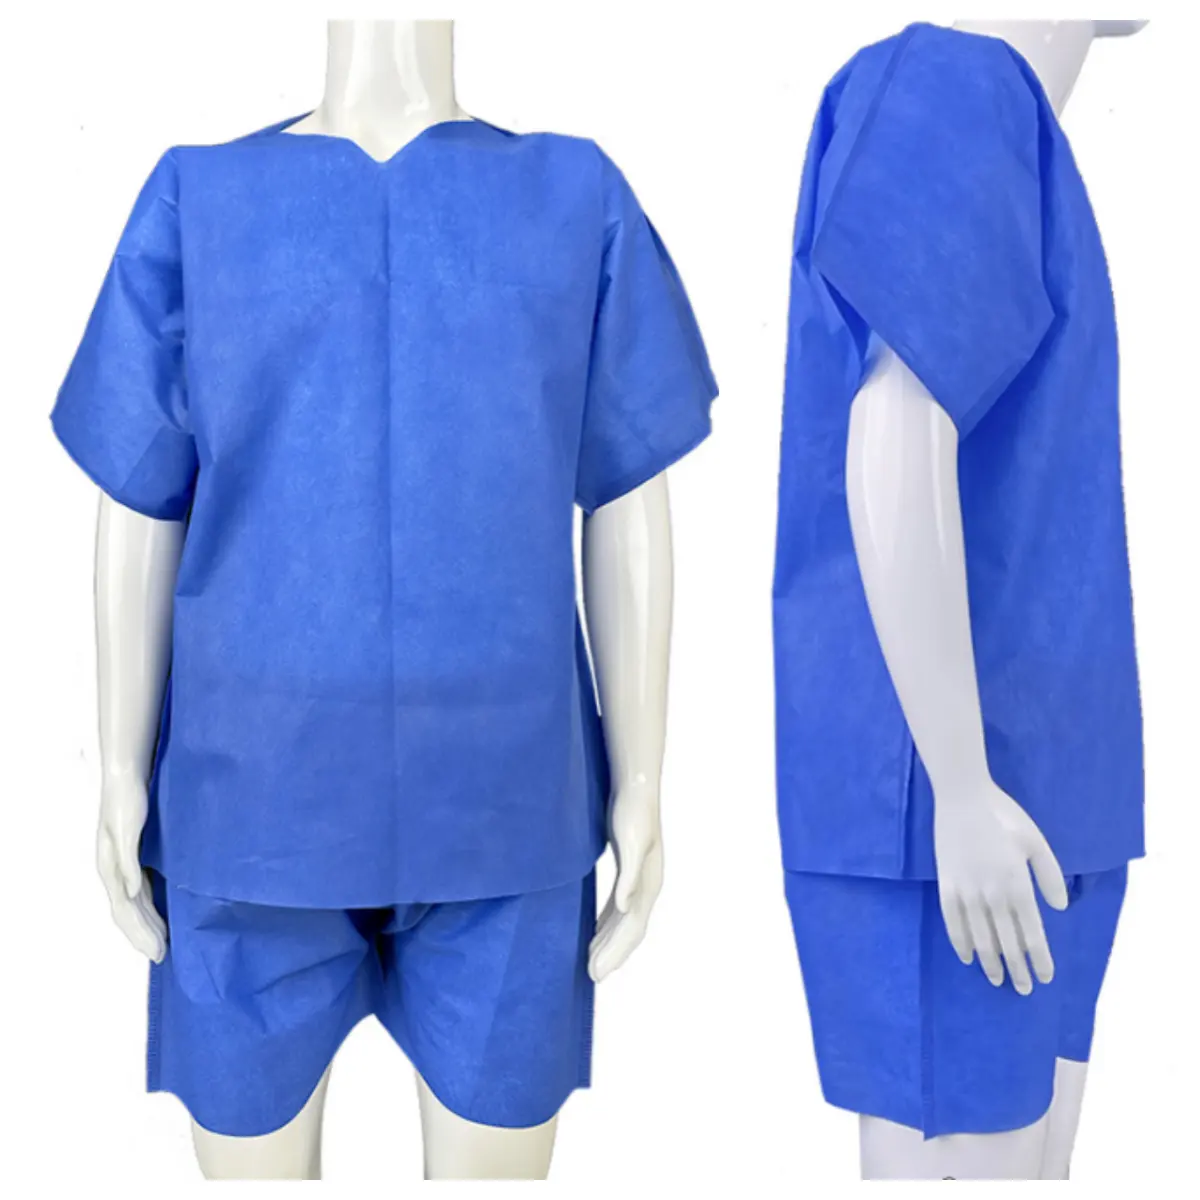 Gaun pasien lengan pendek PP/SMS, gaun seragam rumah sakit, Scrub bedah, setelan untuk dokter perawat